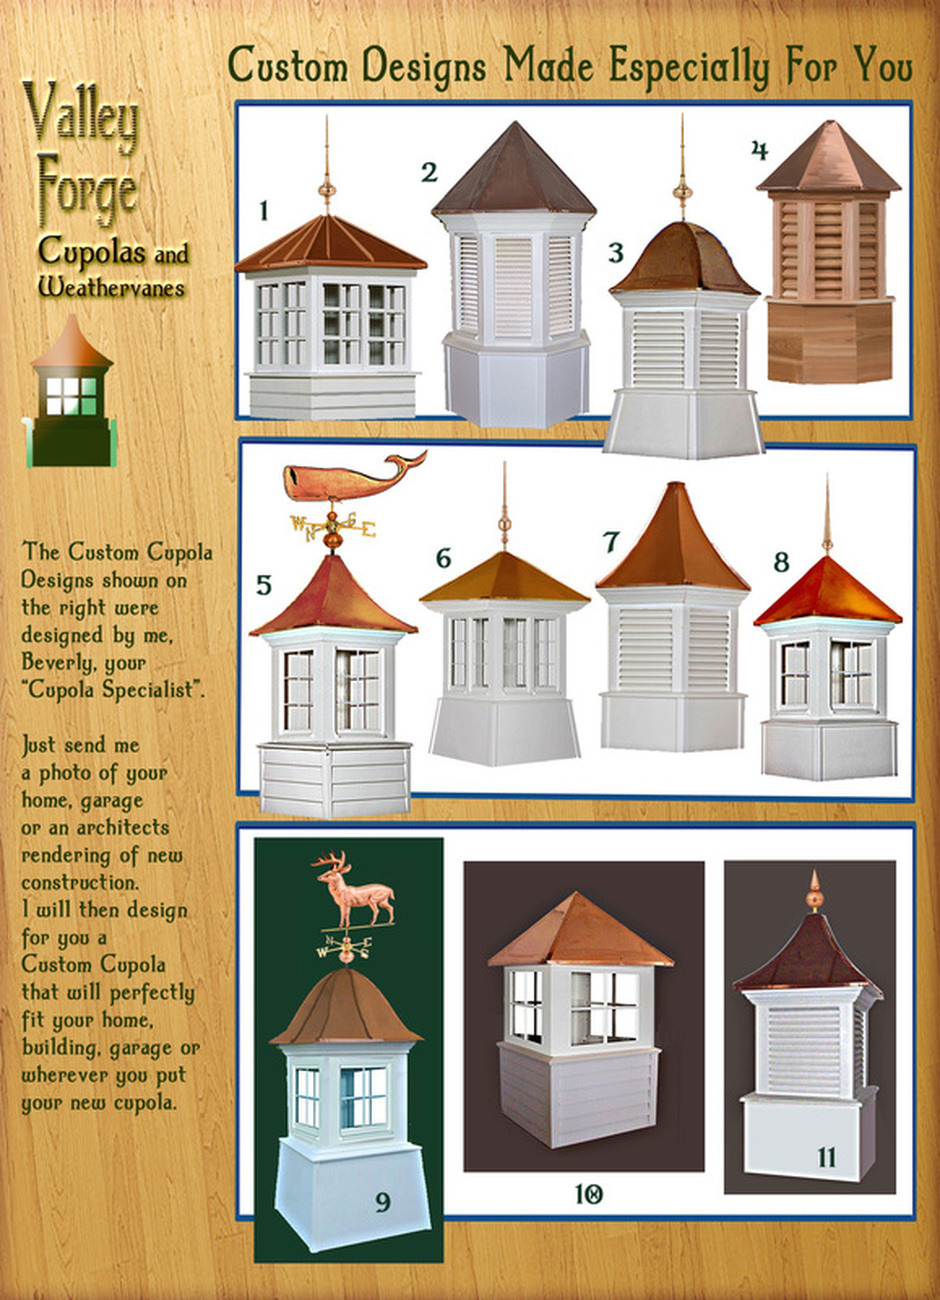 Custom designed cupolas made especially for you